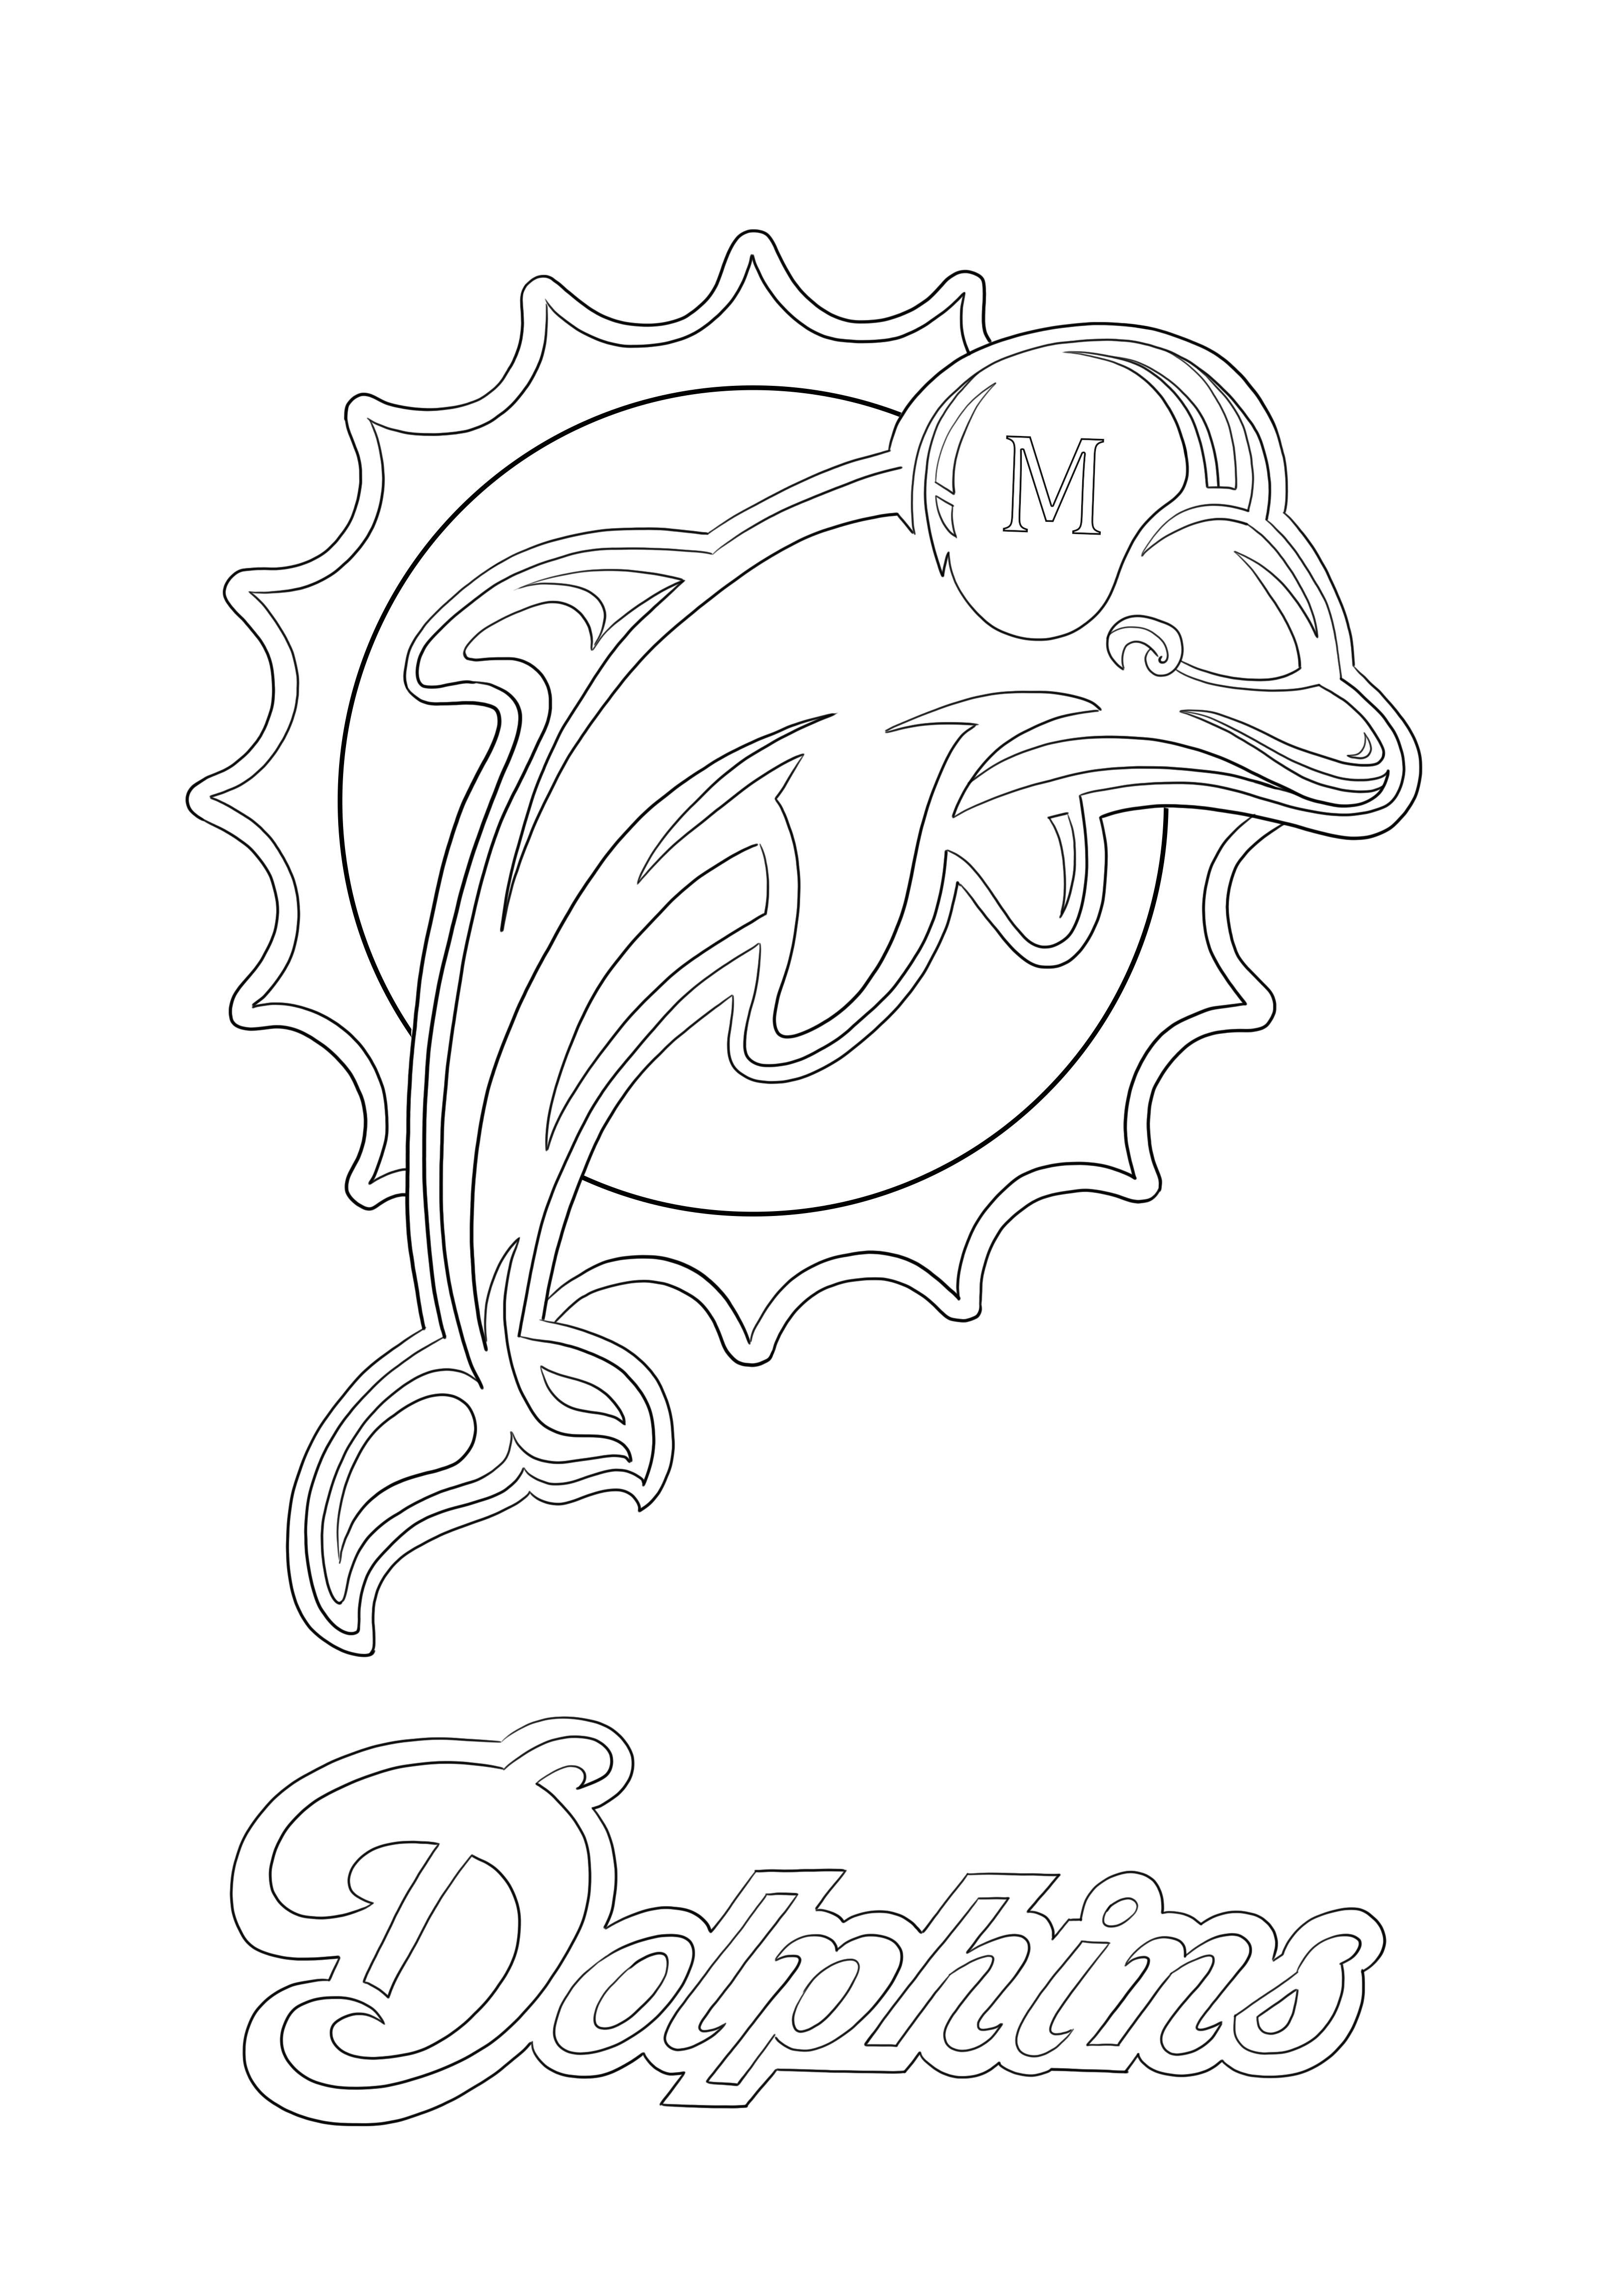 Miami Dolphins logo baskı ve boyama sayfası